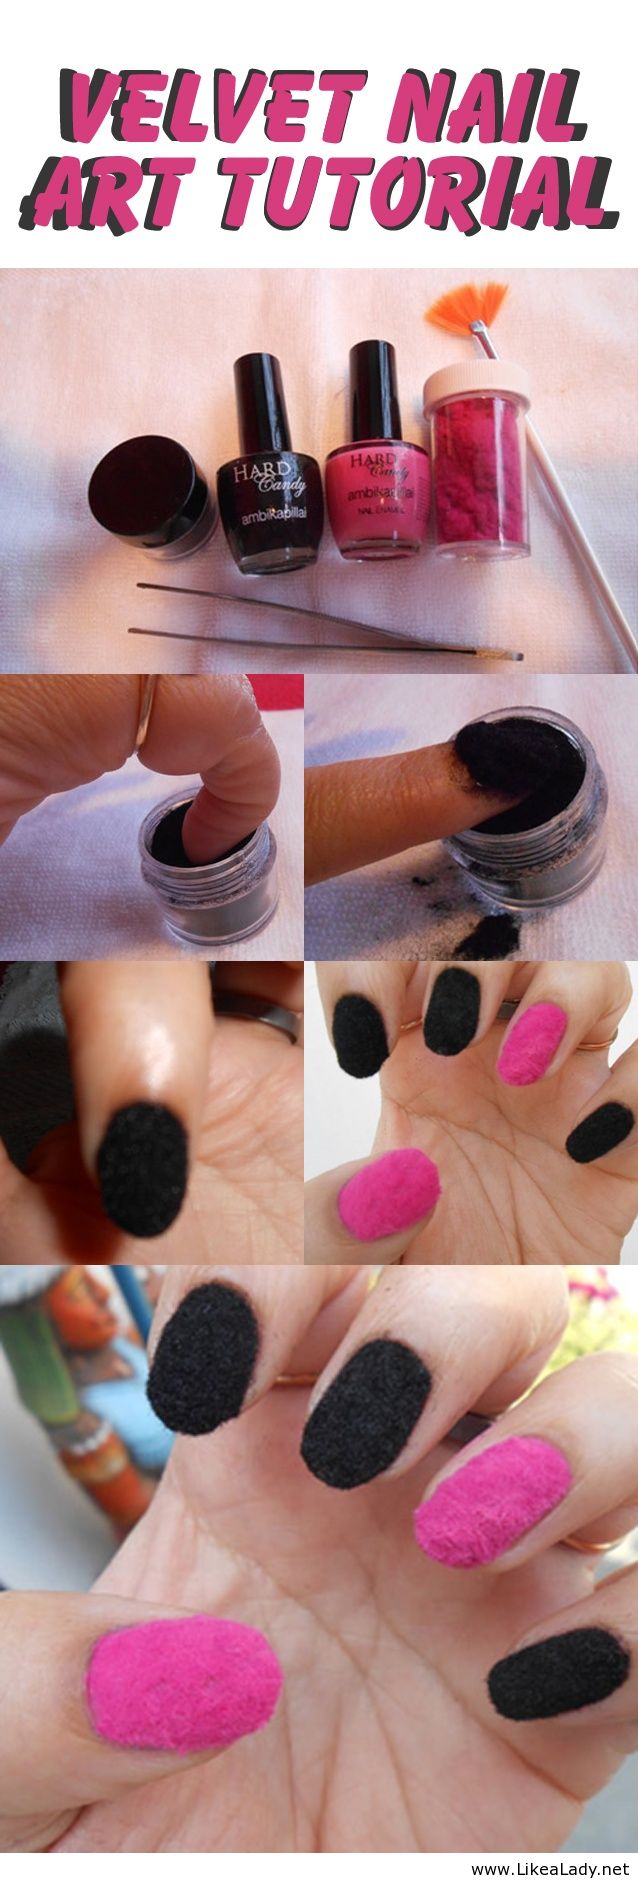 Velvet nail art tutorial